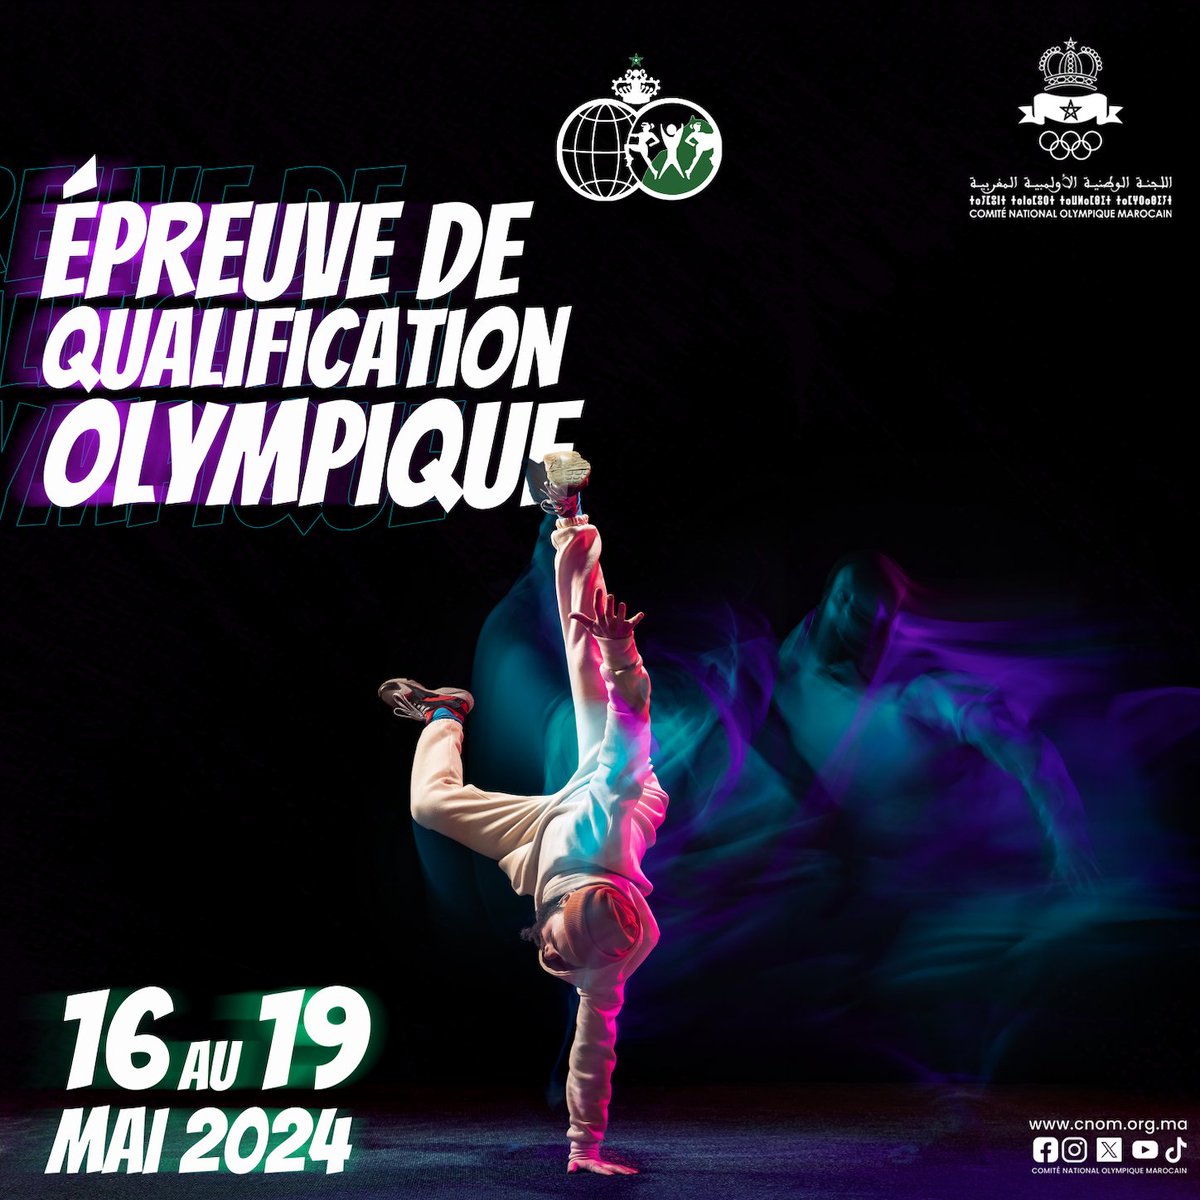 بالتوفيق لمنتخبنا الوطني للبريك دانس الذي سيشارك في التصفيات المؤهلة لدورة الألعاب الأولمبية في باريس 2024 المنظم،  من 16 إلى 19 ماي 2024، بشنغهاي 💪🇲🇦

#Breakdance #RoadToParis2024 #TeamMorocco